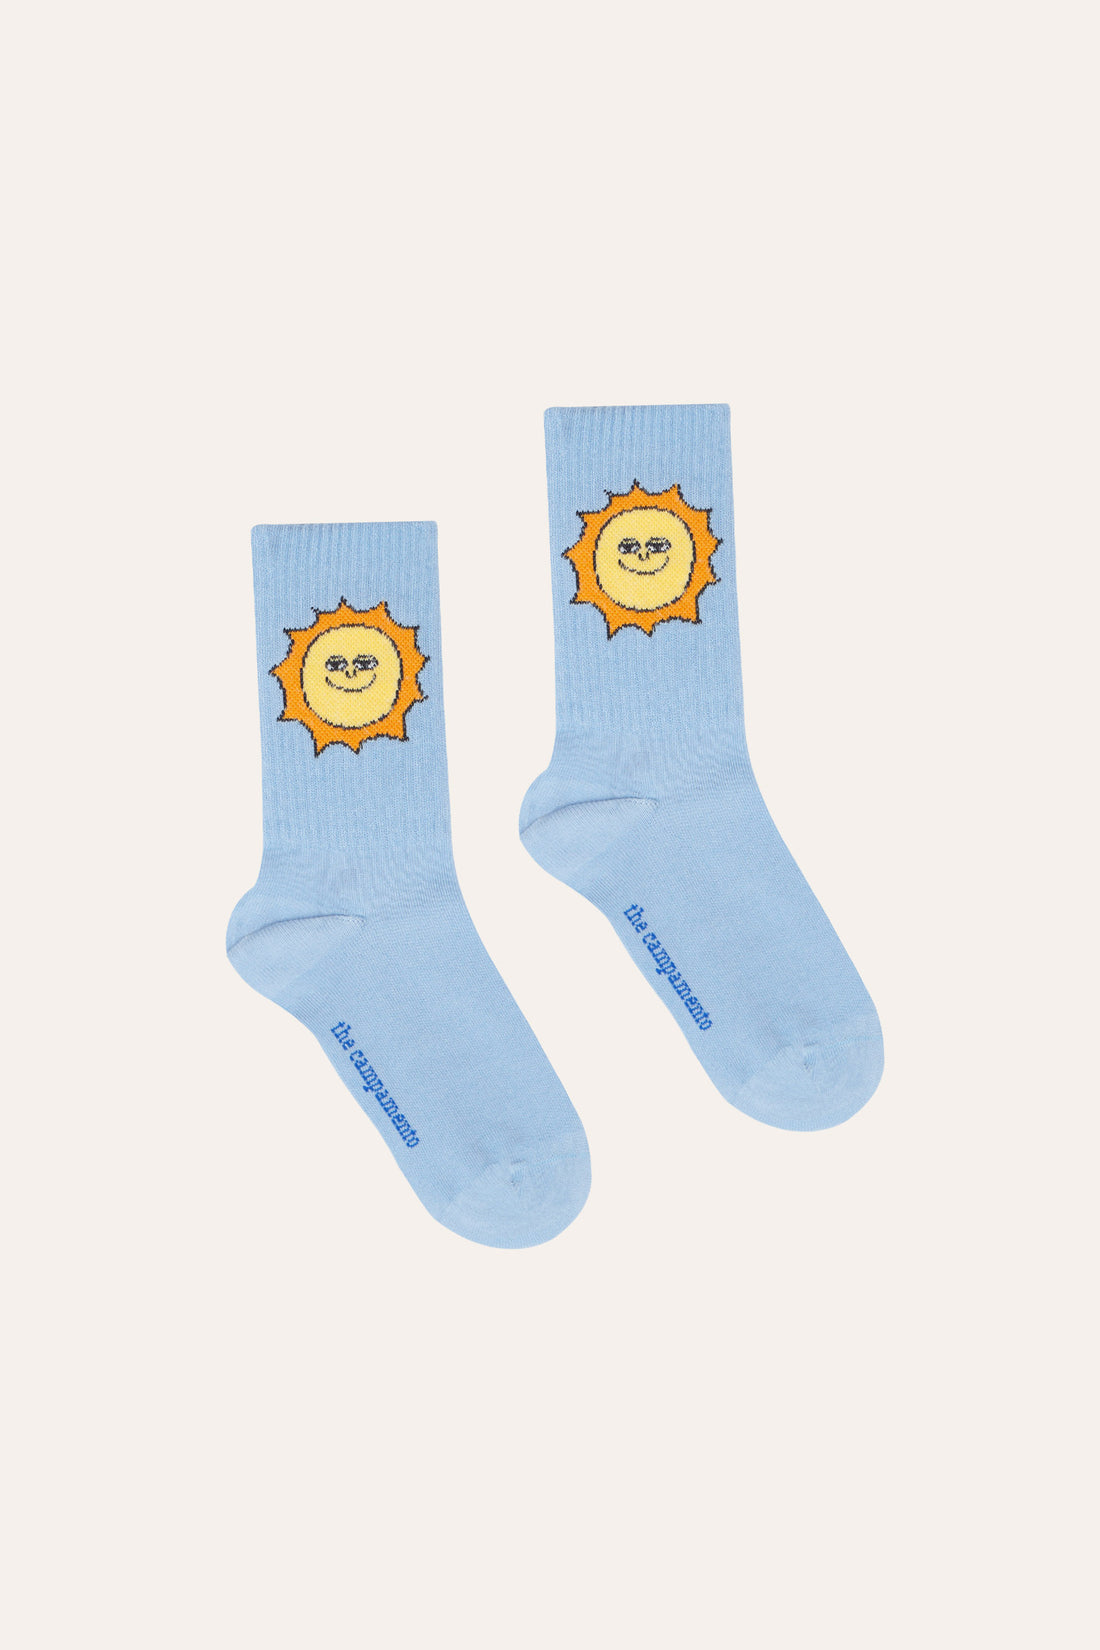 Kids Socks | Smiling Suns